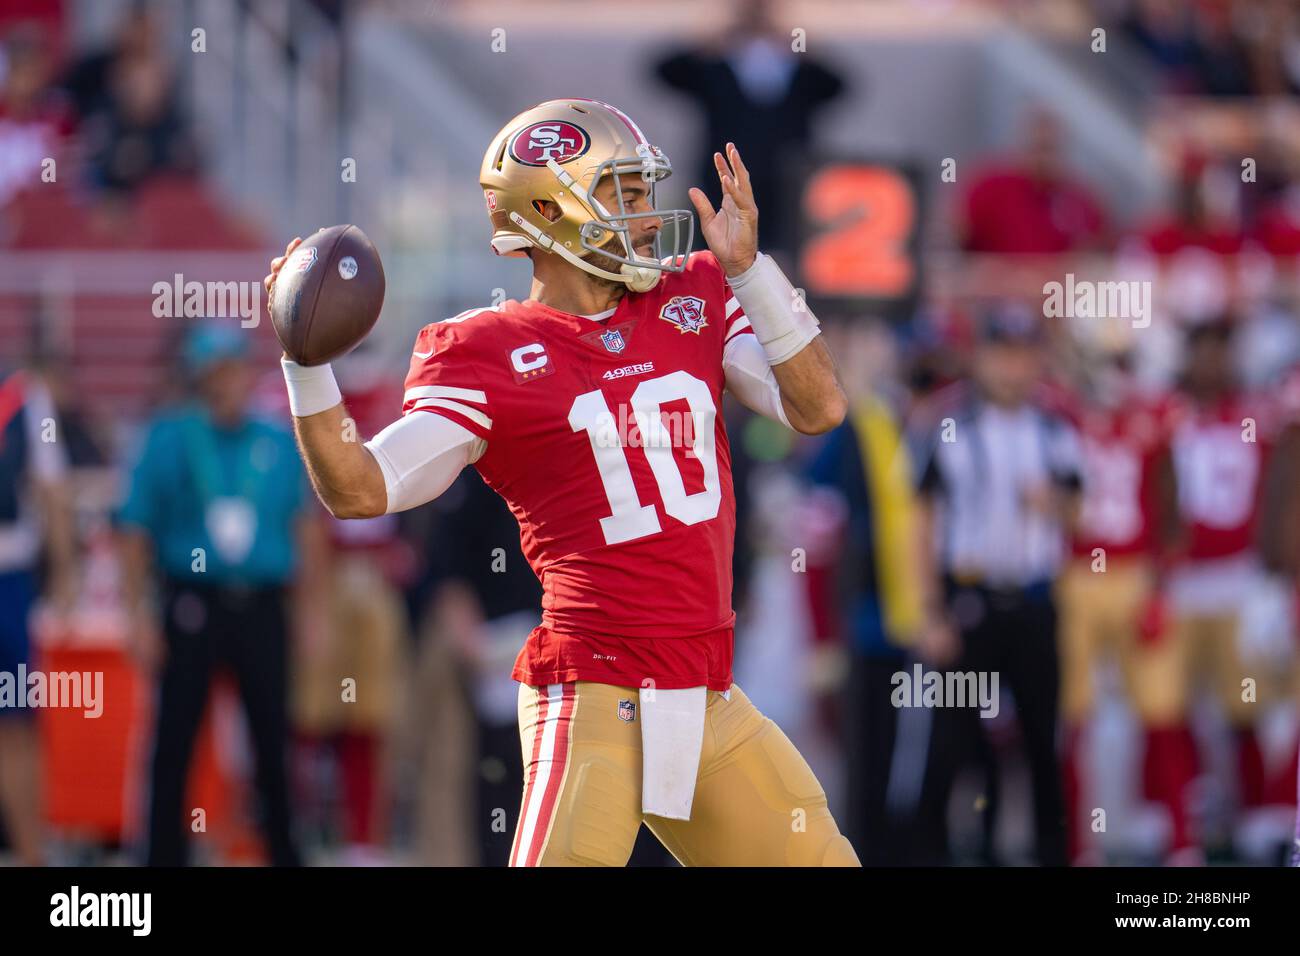 Santa Clara, USA. 28th Nov, 2021. San Francisco 49ers quarterback